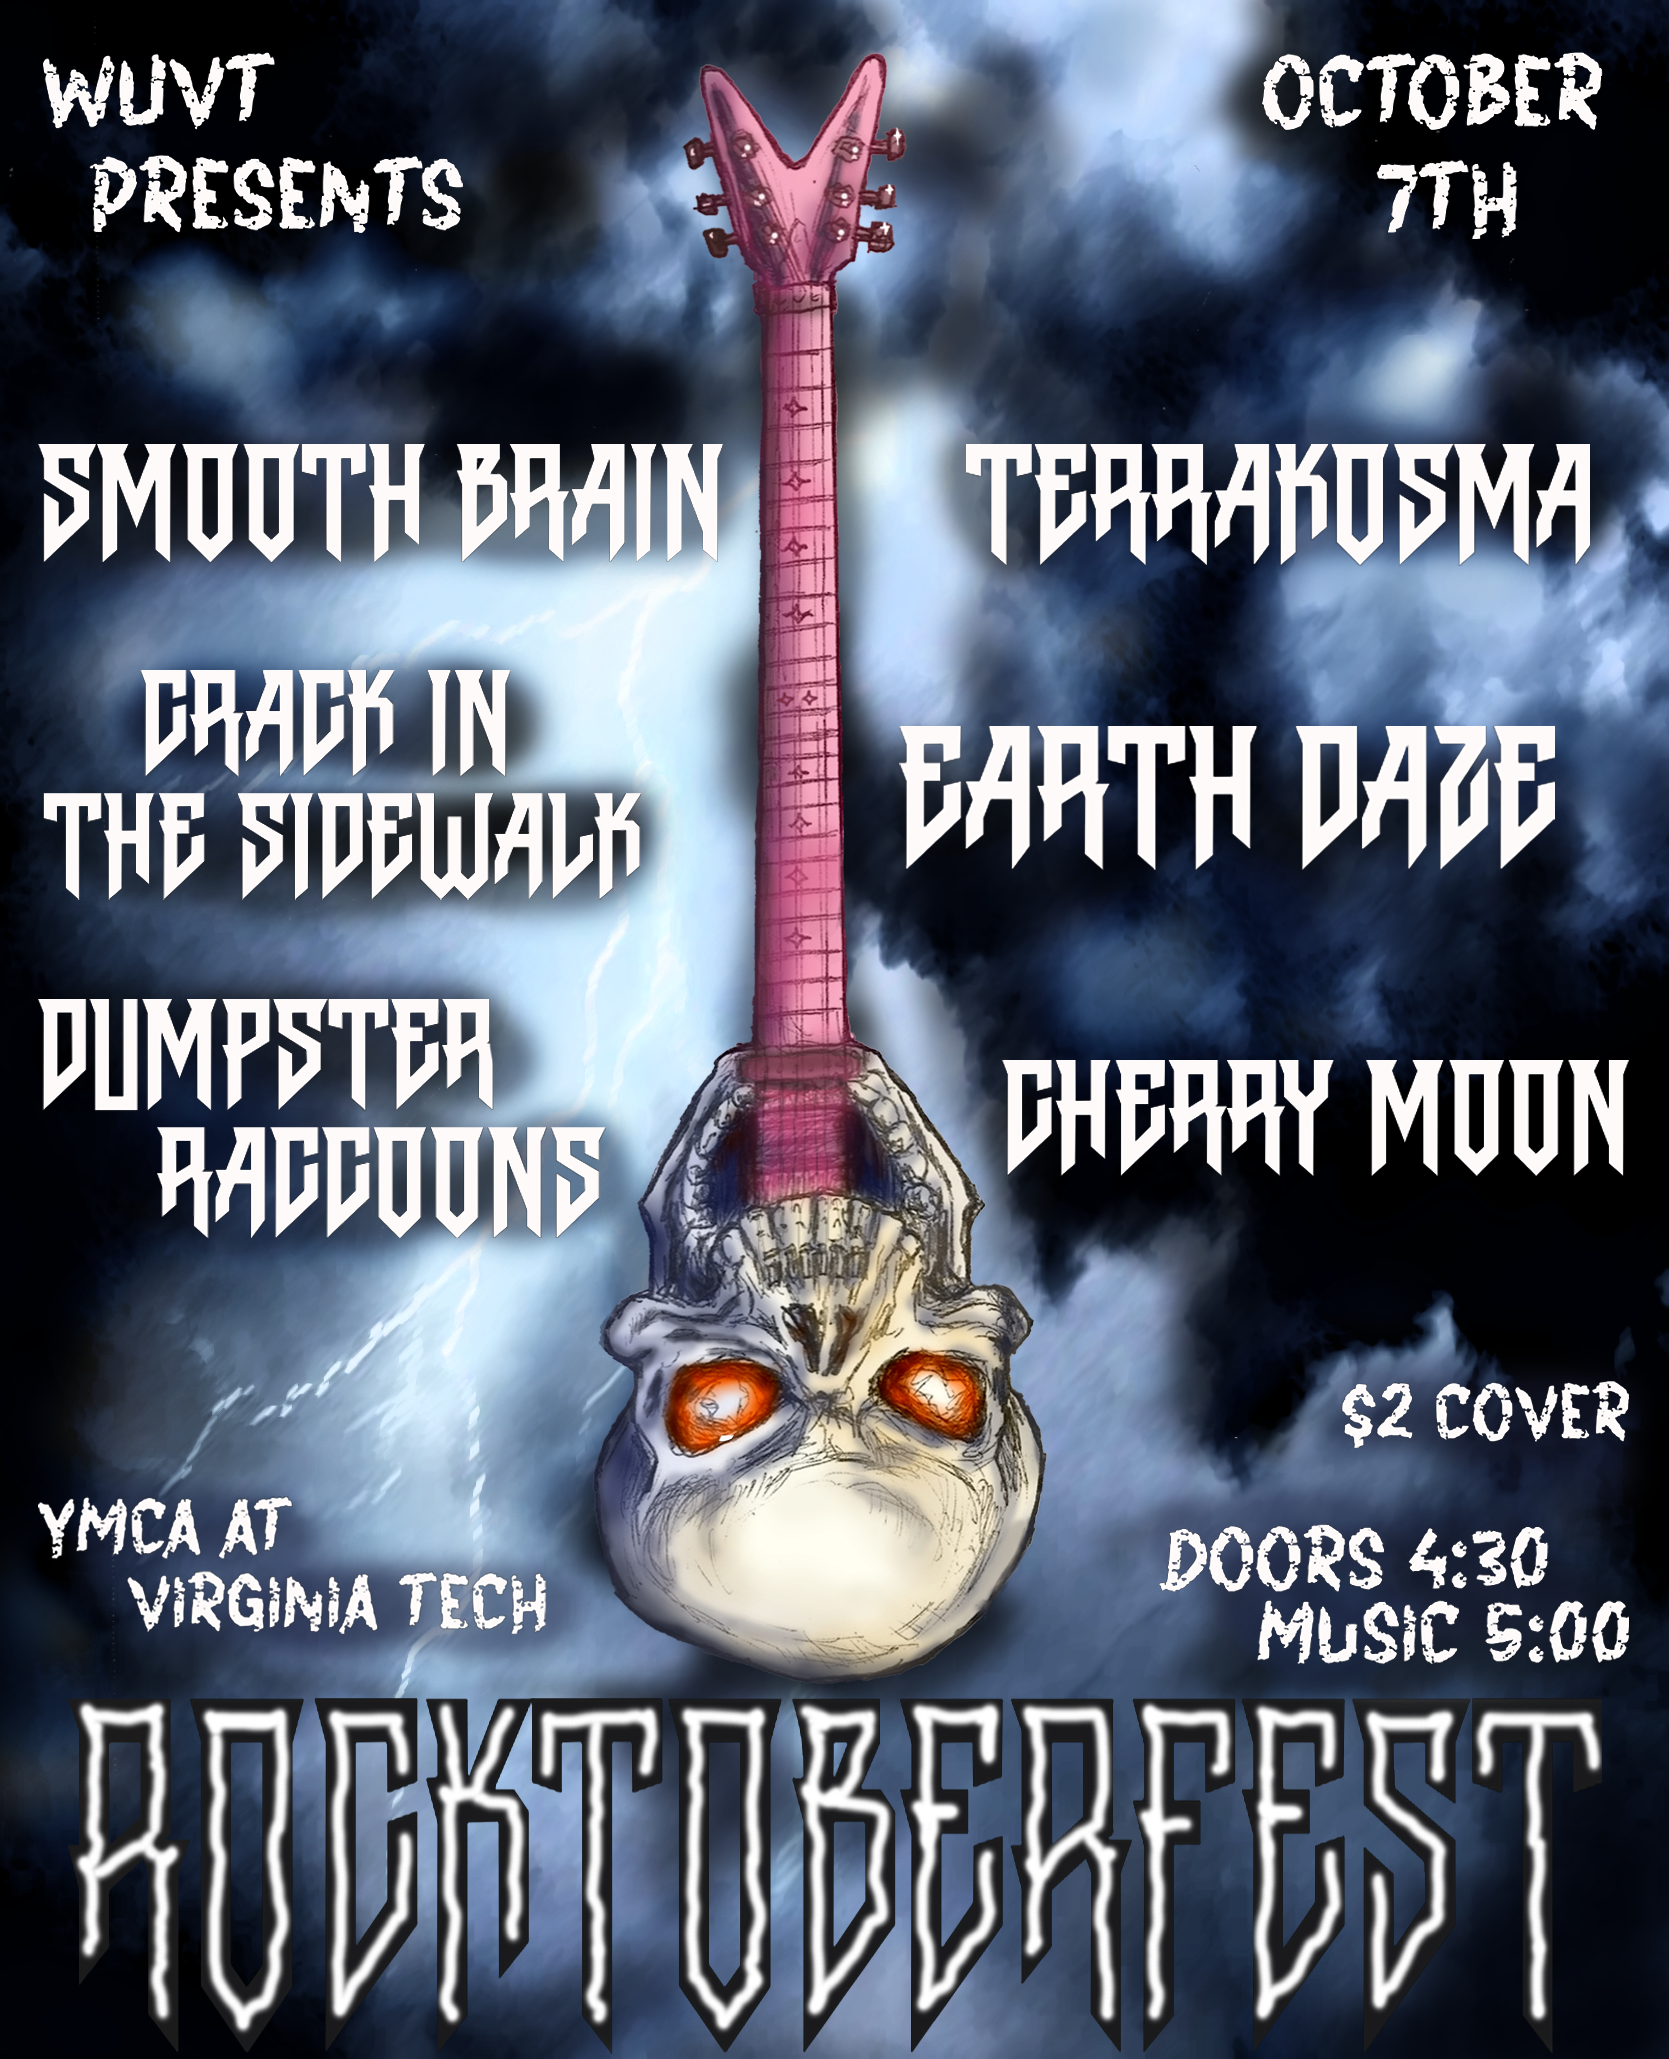 Rocktoberfest